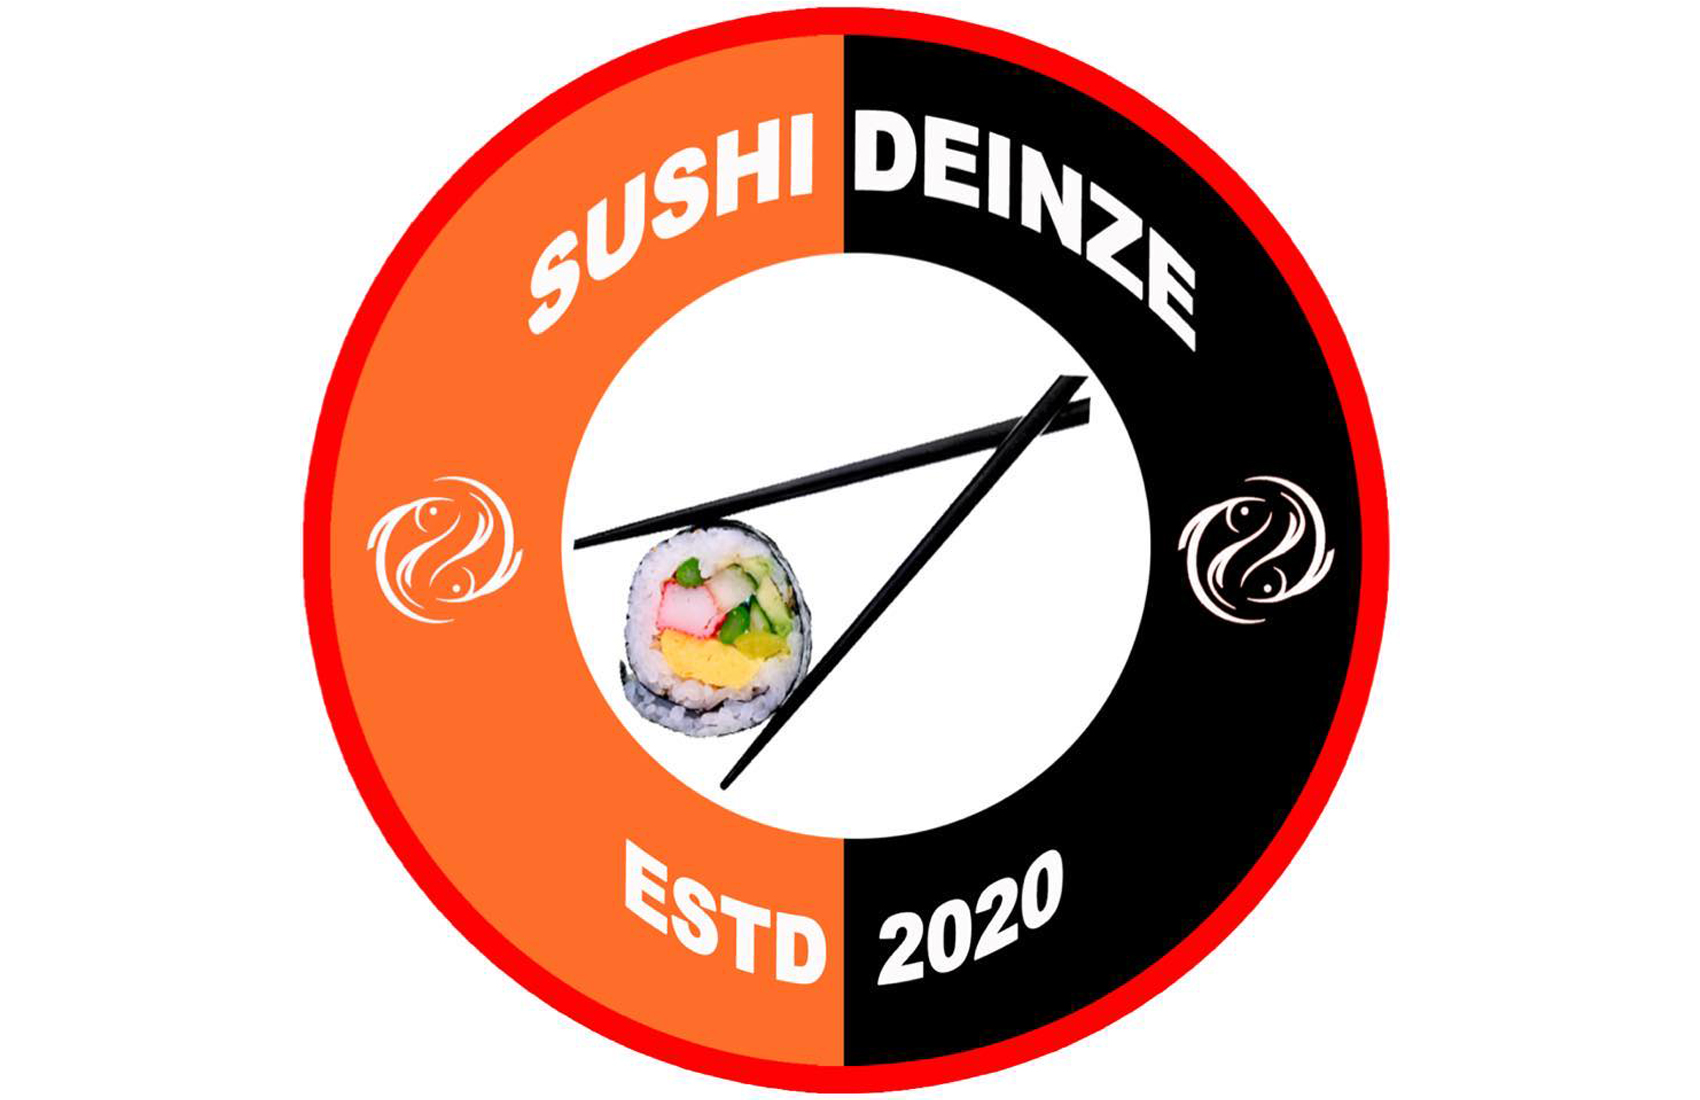 Sushi Deinze